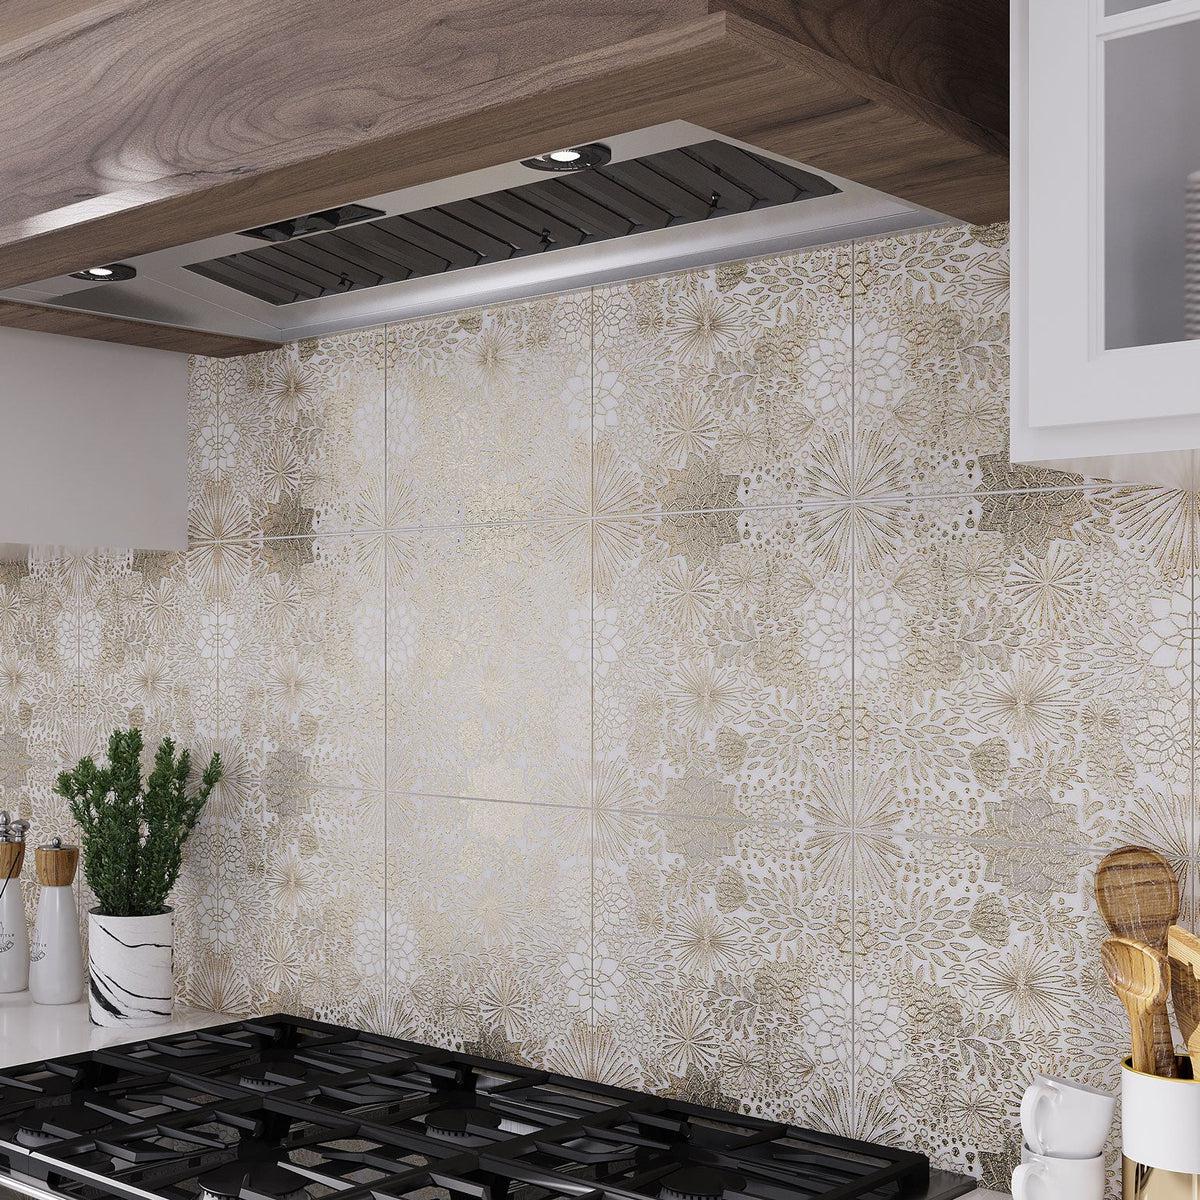 Floral tile with gold inlay kitchen backsplash